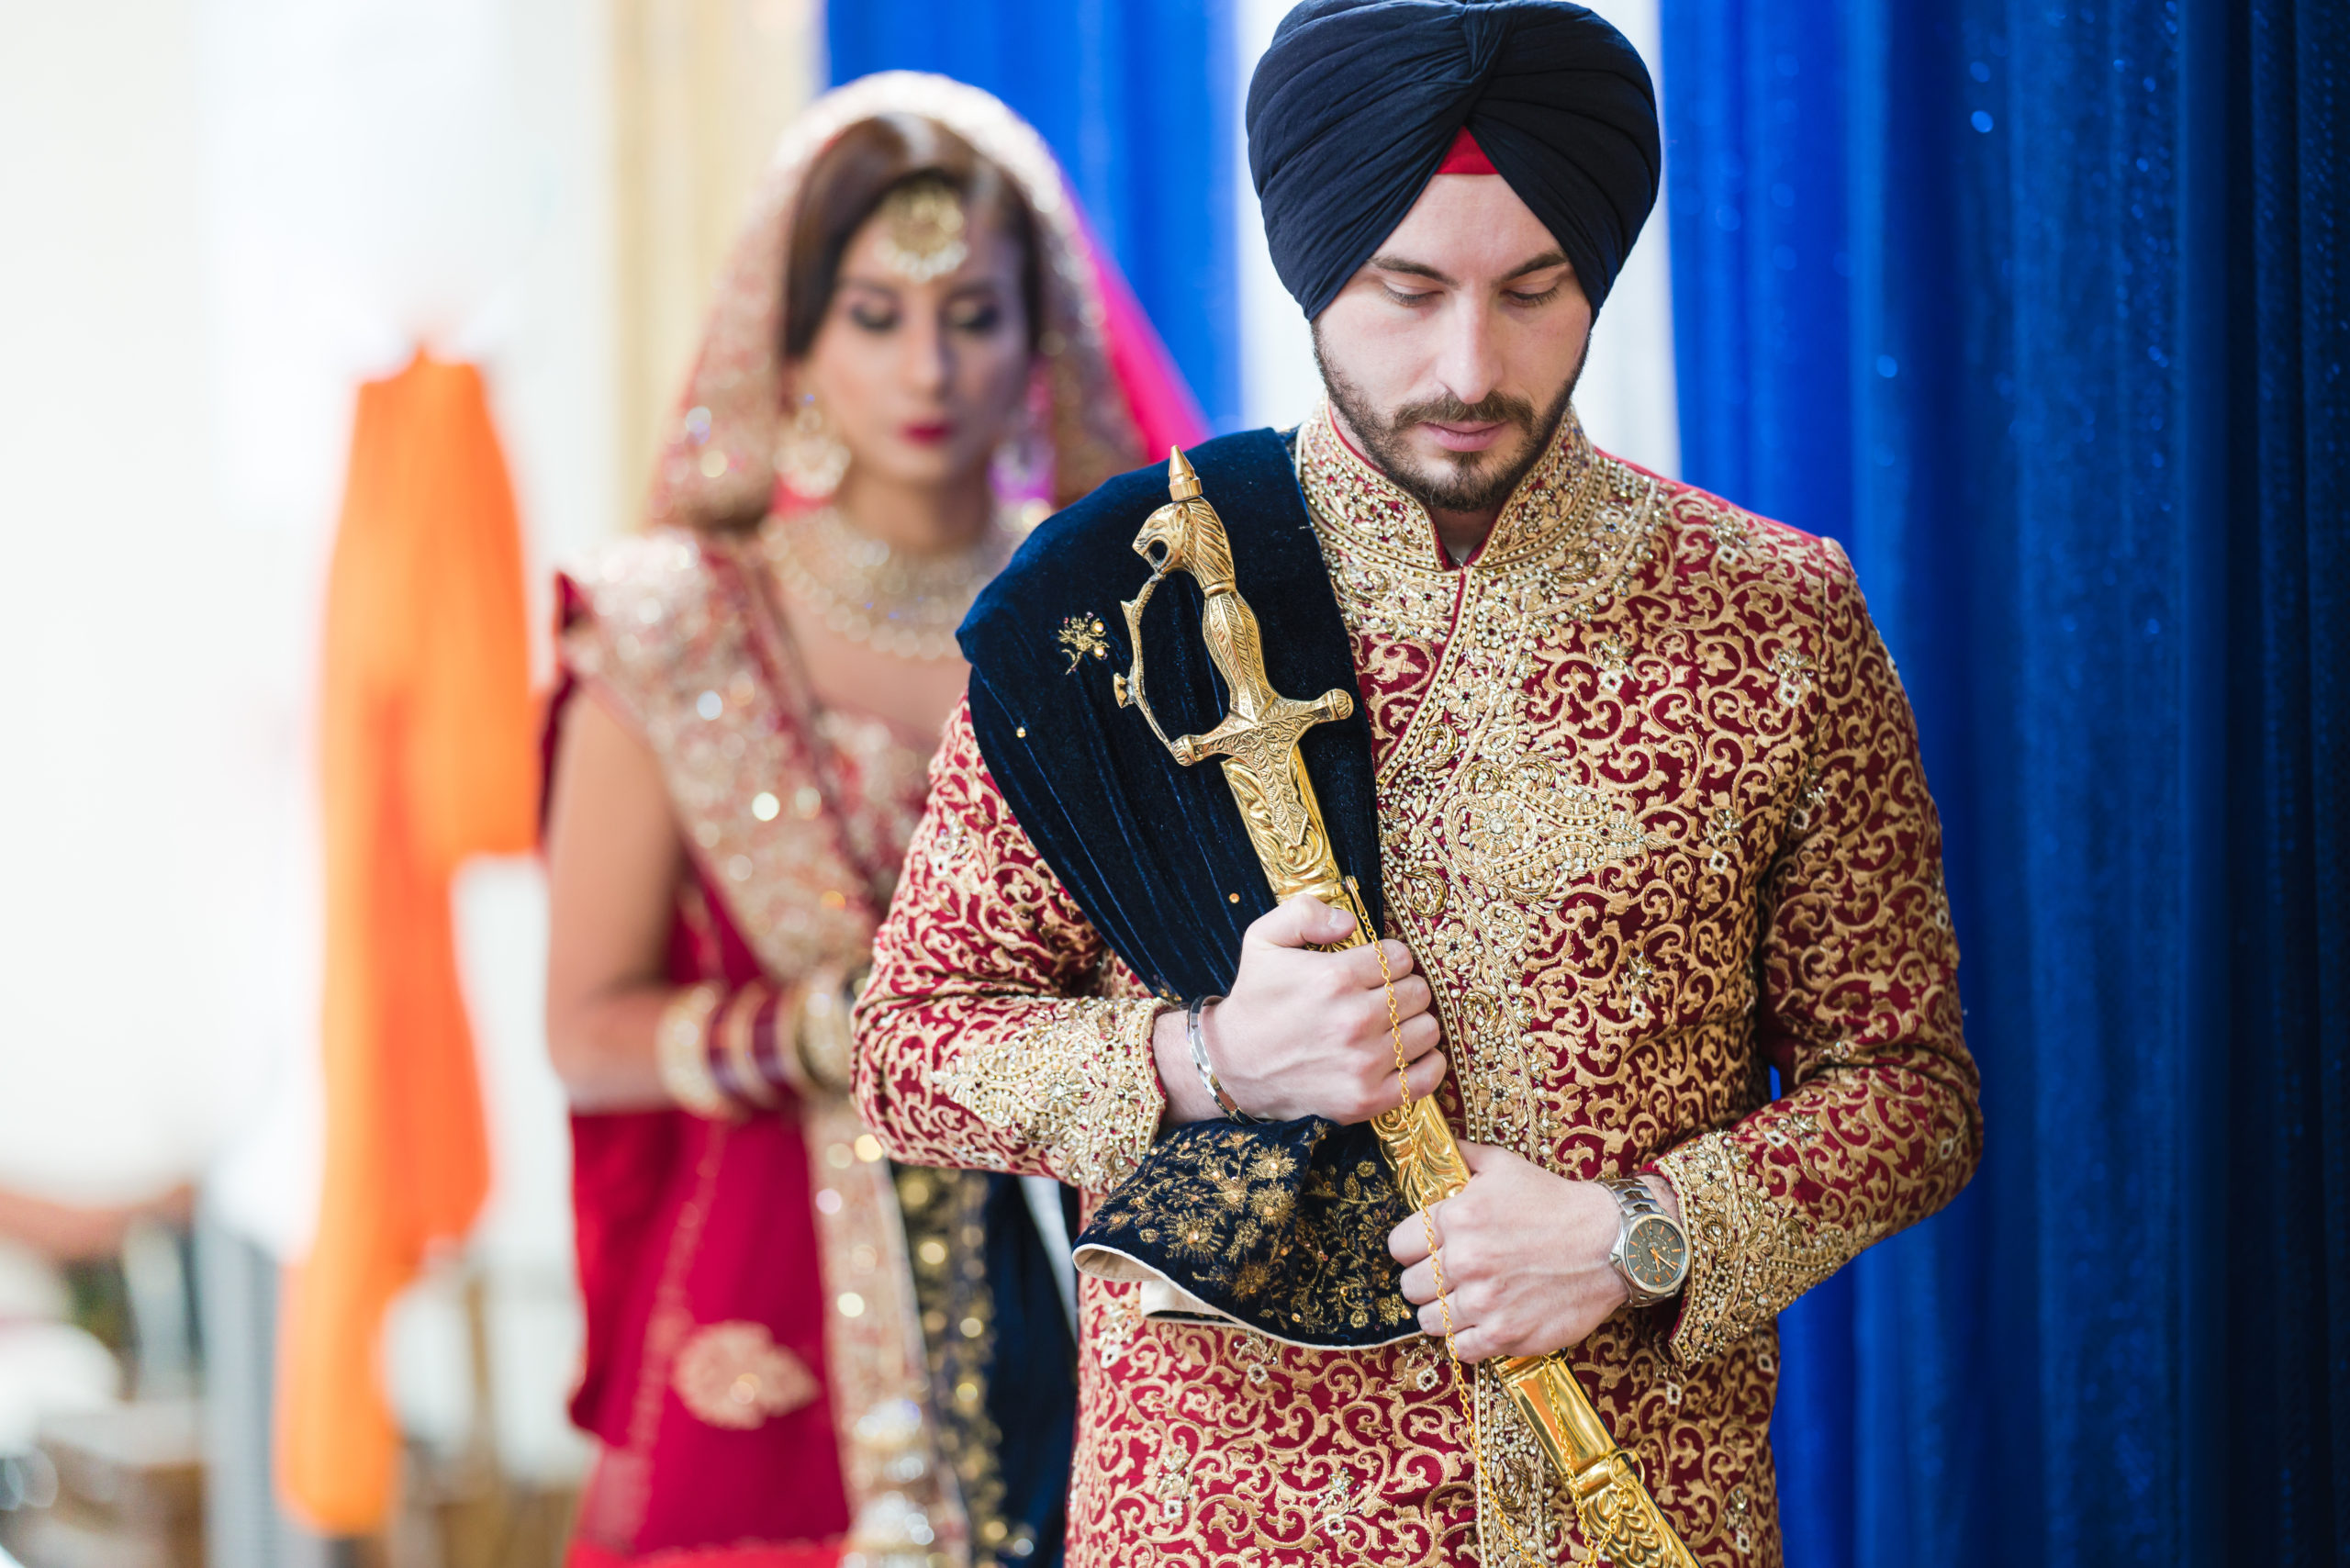 sikh wedding ceremony